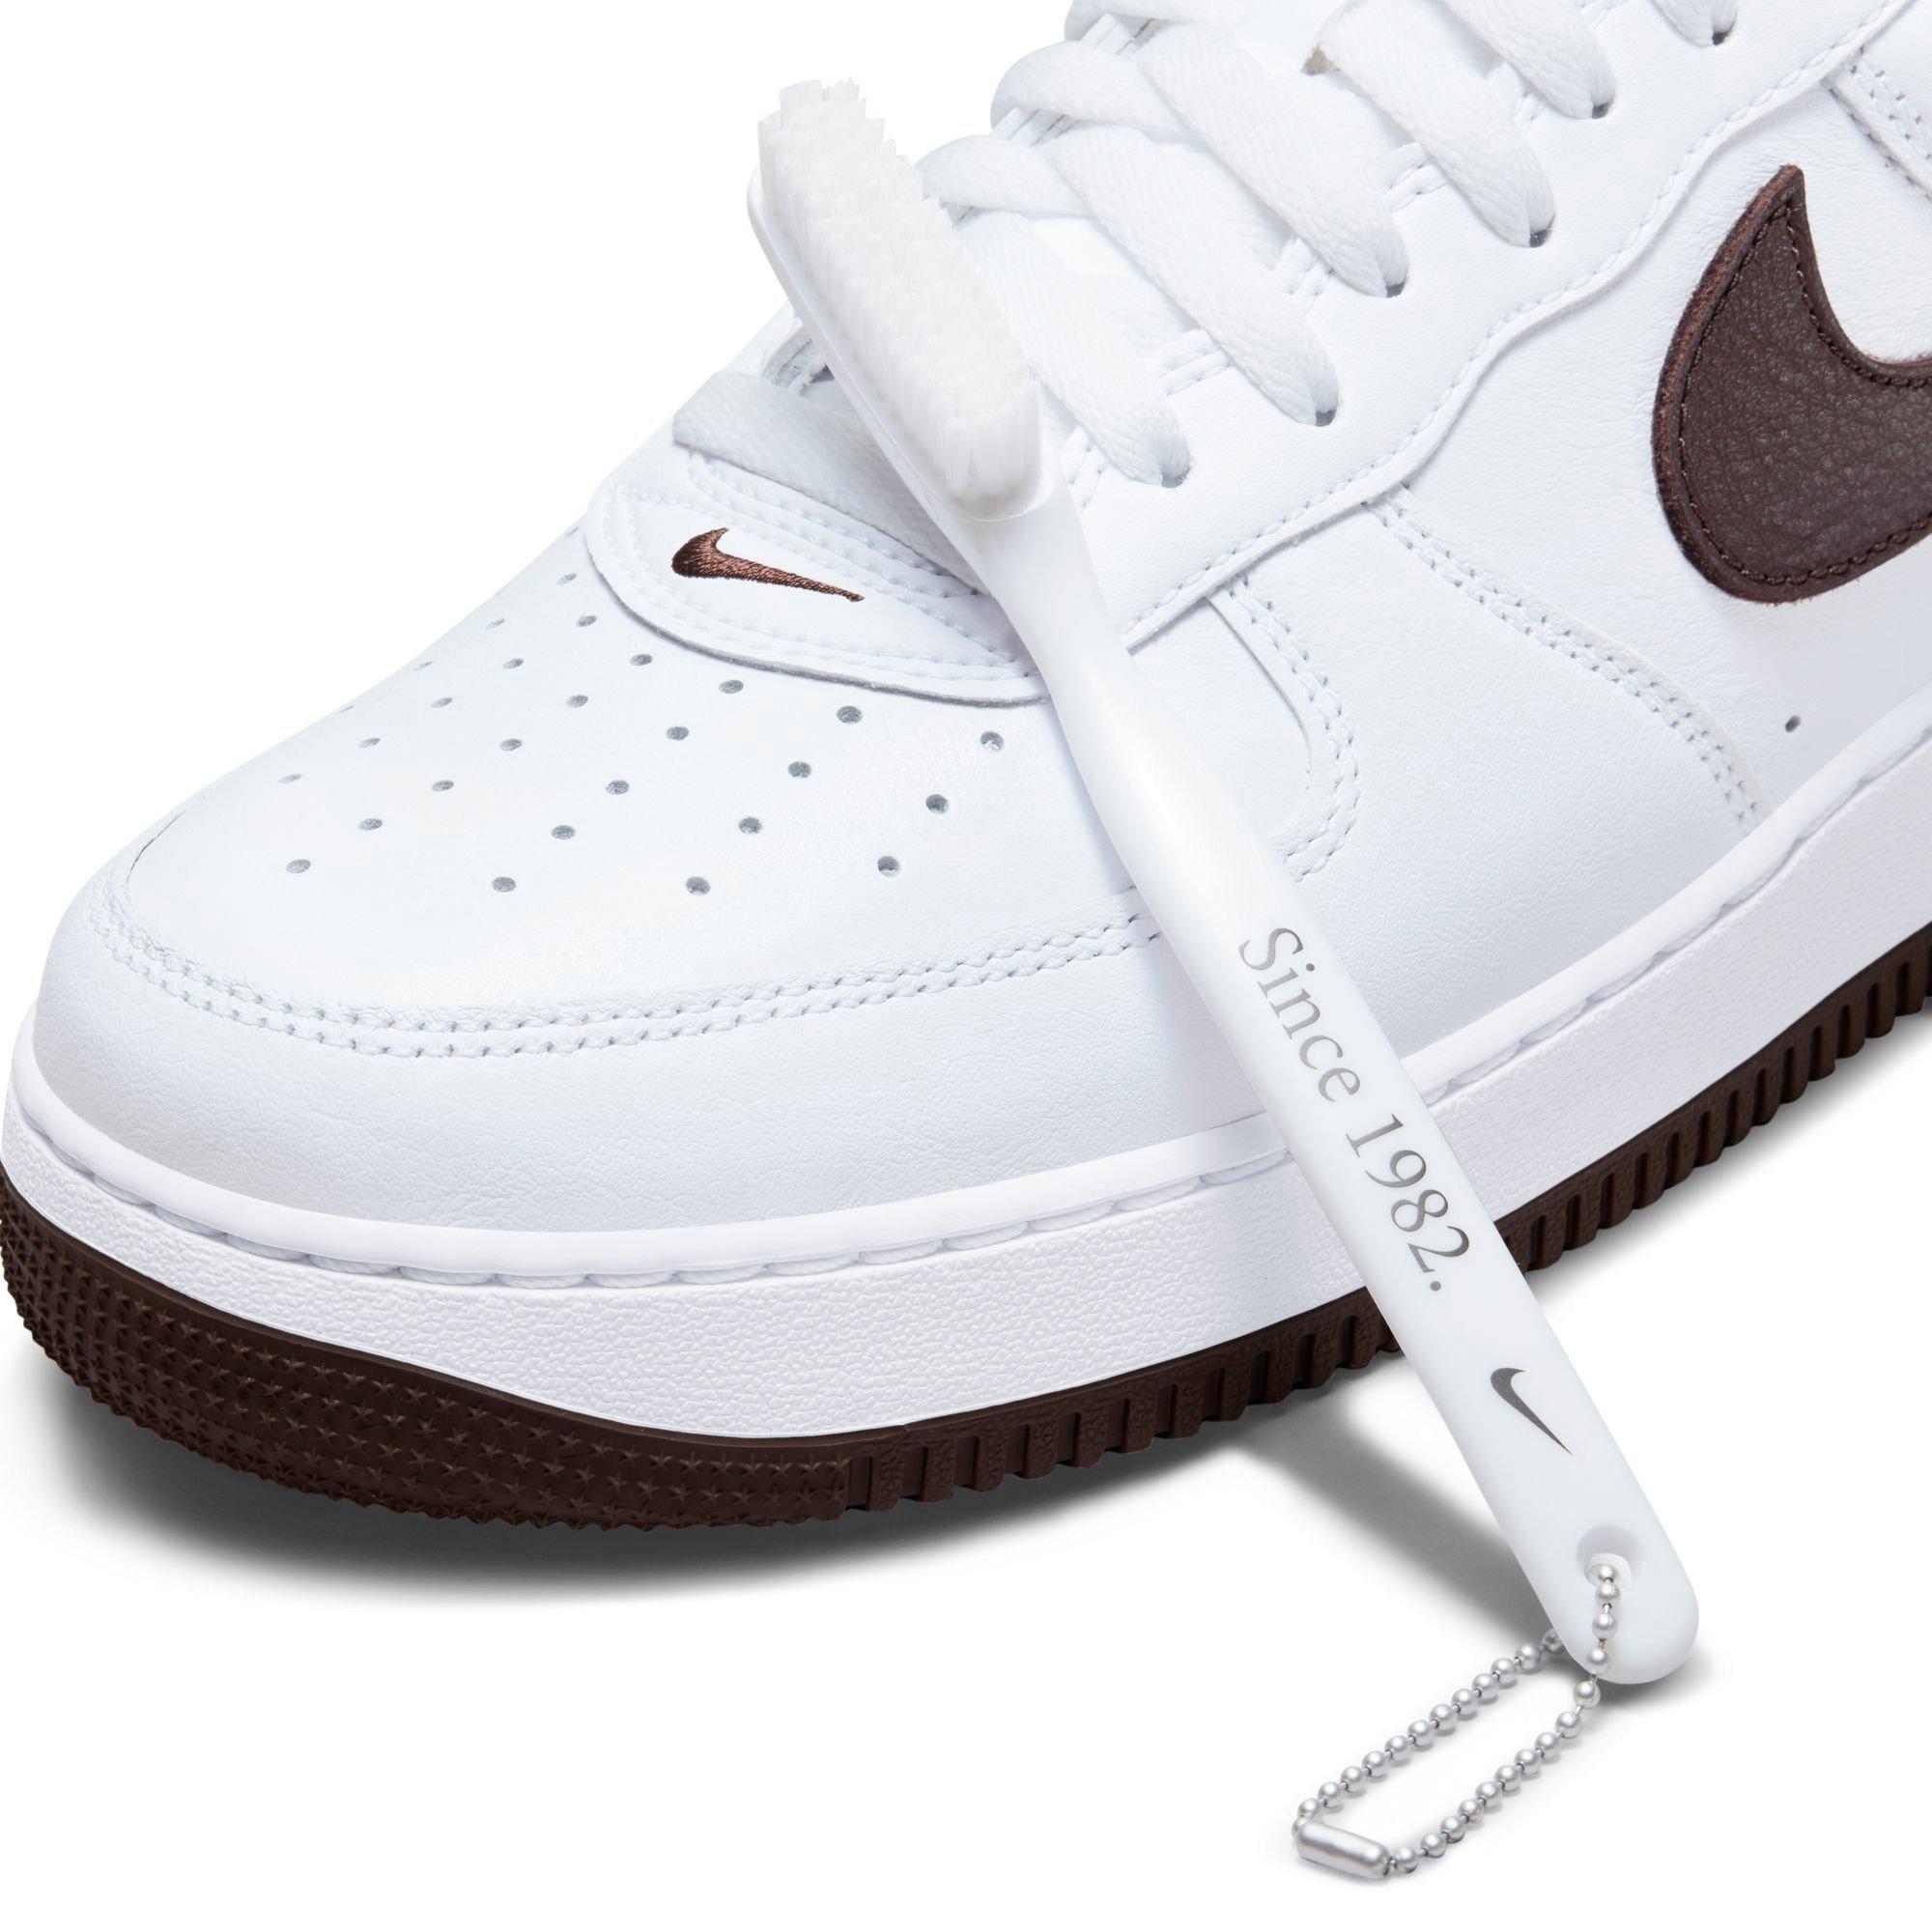 Nike Air Force 1 Low Retro Since 82 White - WHITE/WHITE-WHITE-METALLIC  GOLD